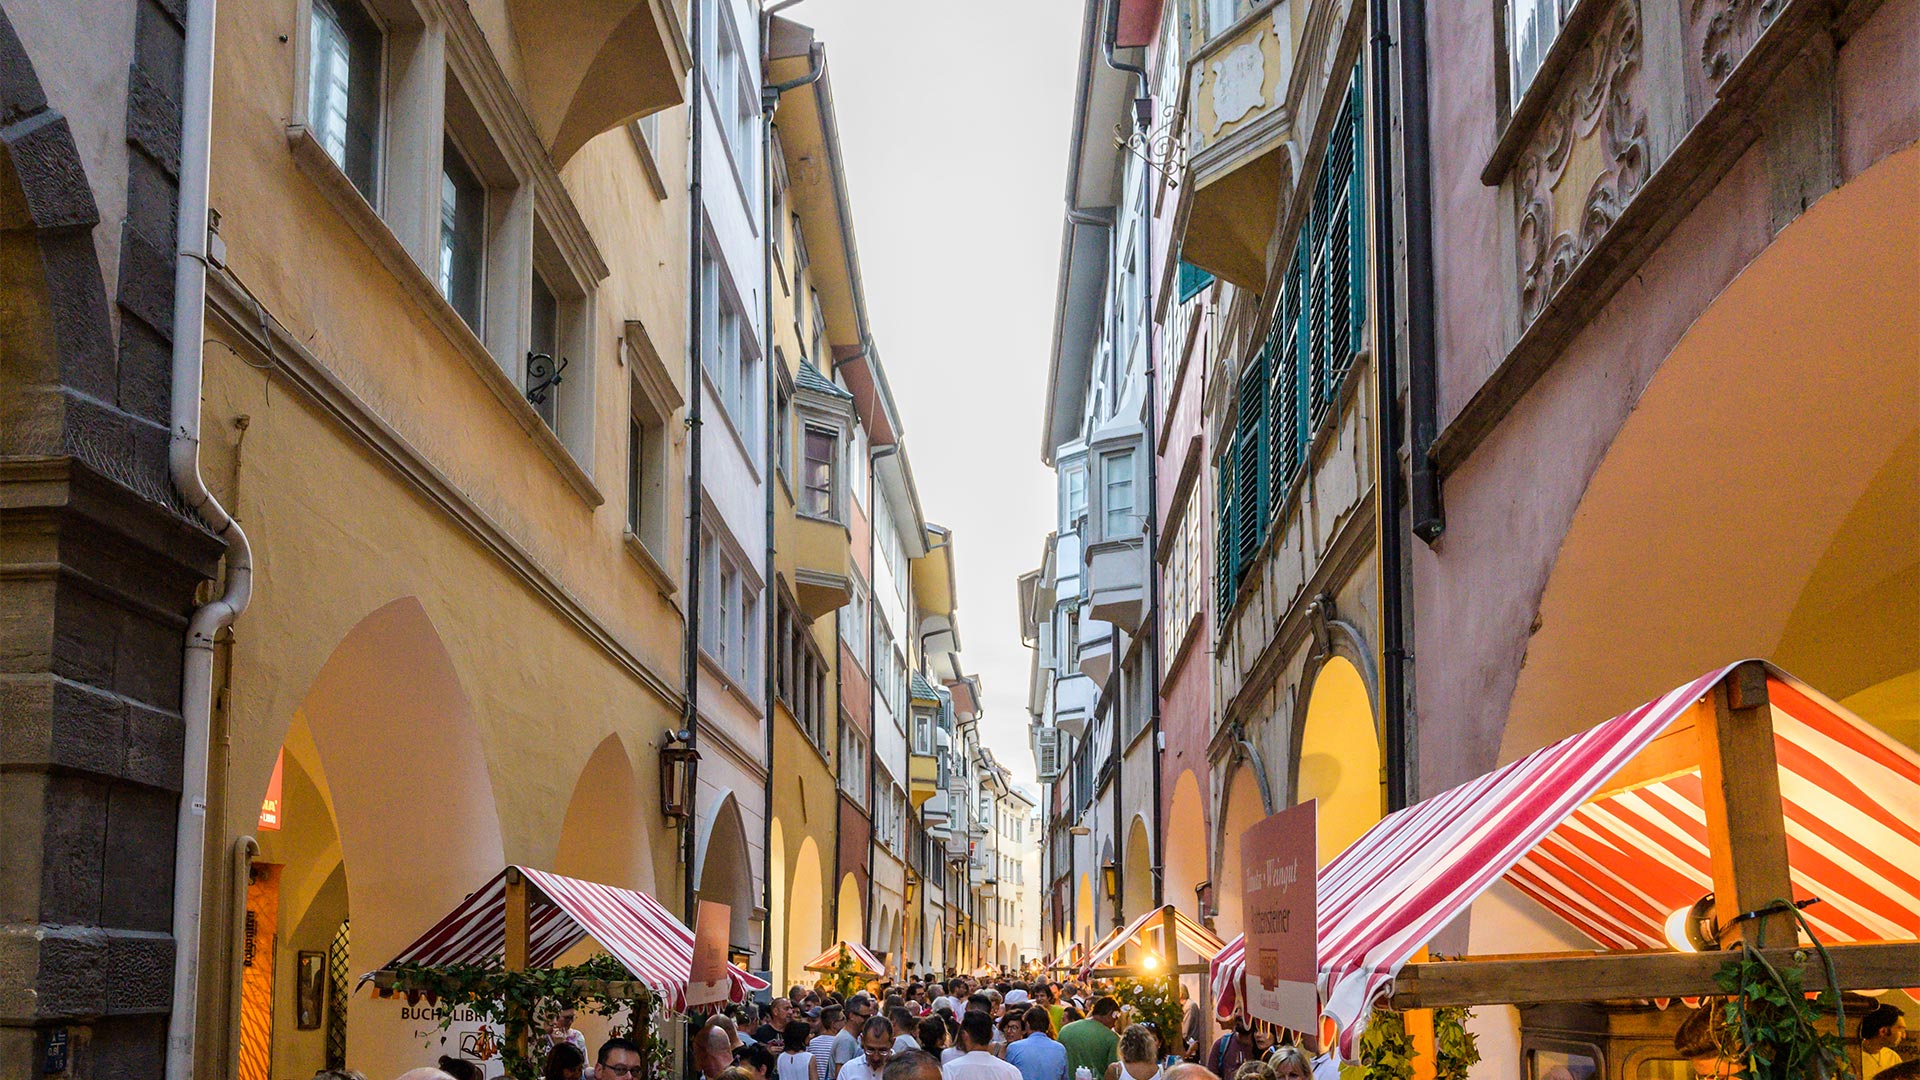 Via stretta tra i portici del centro storico a Bolzano, affollato da turisti e cittadini in mezzo ad un evento.